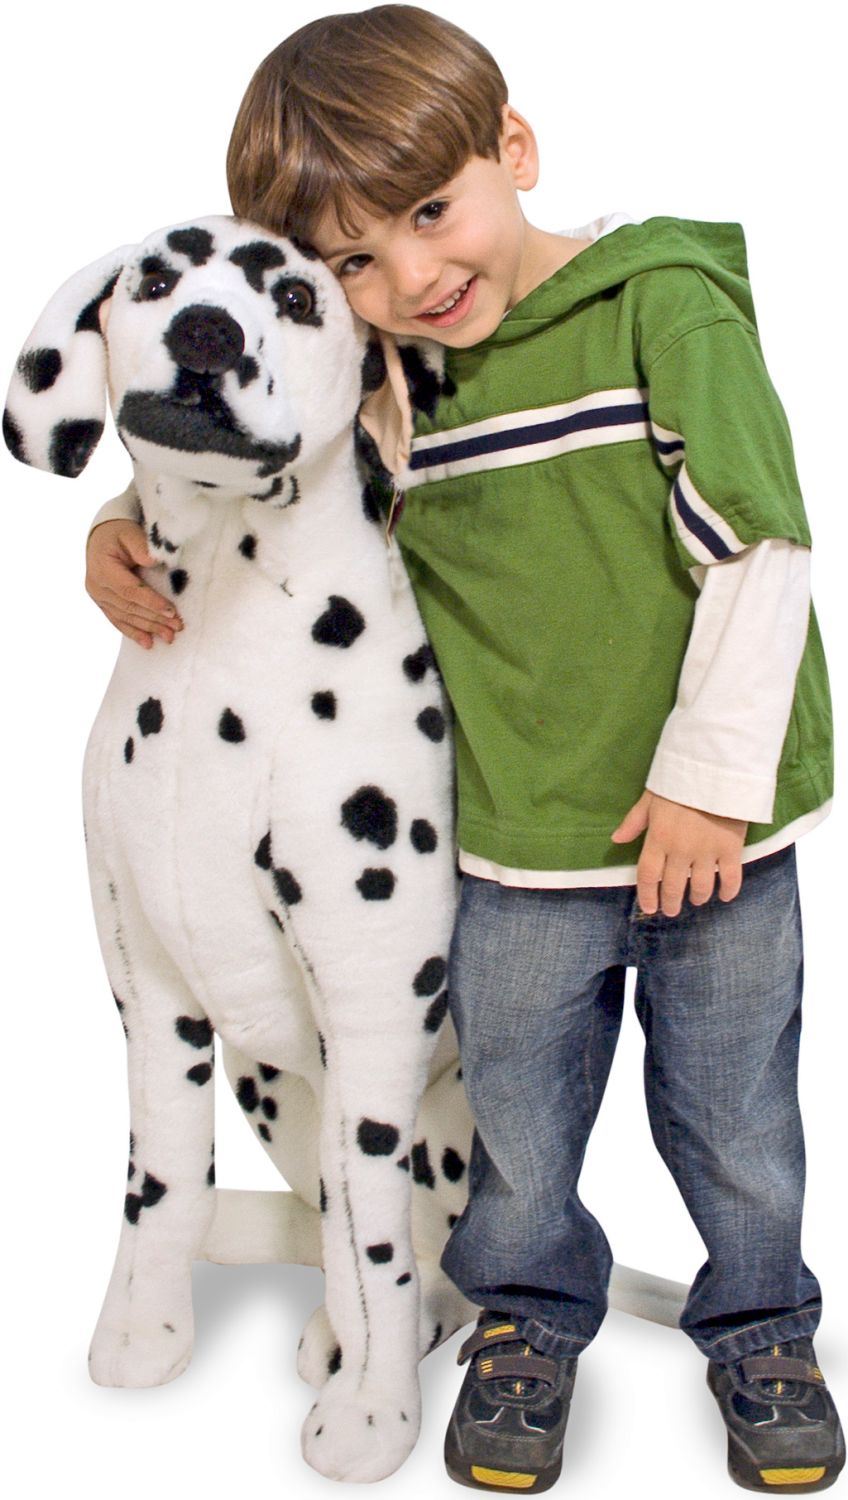 Melissa & Doug Dalmatian Giant Plush Stuffed Animal Toy 12110